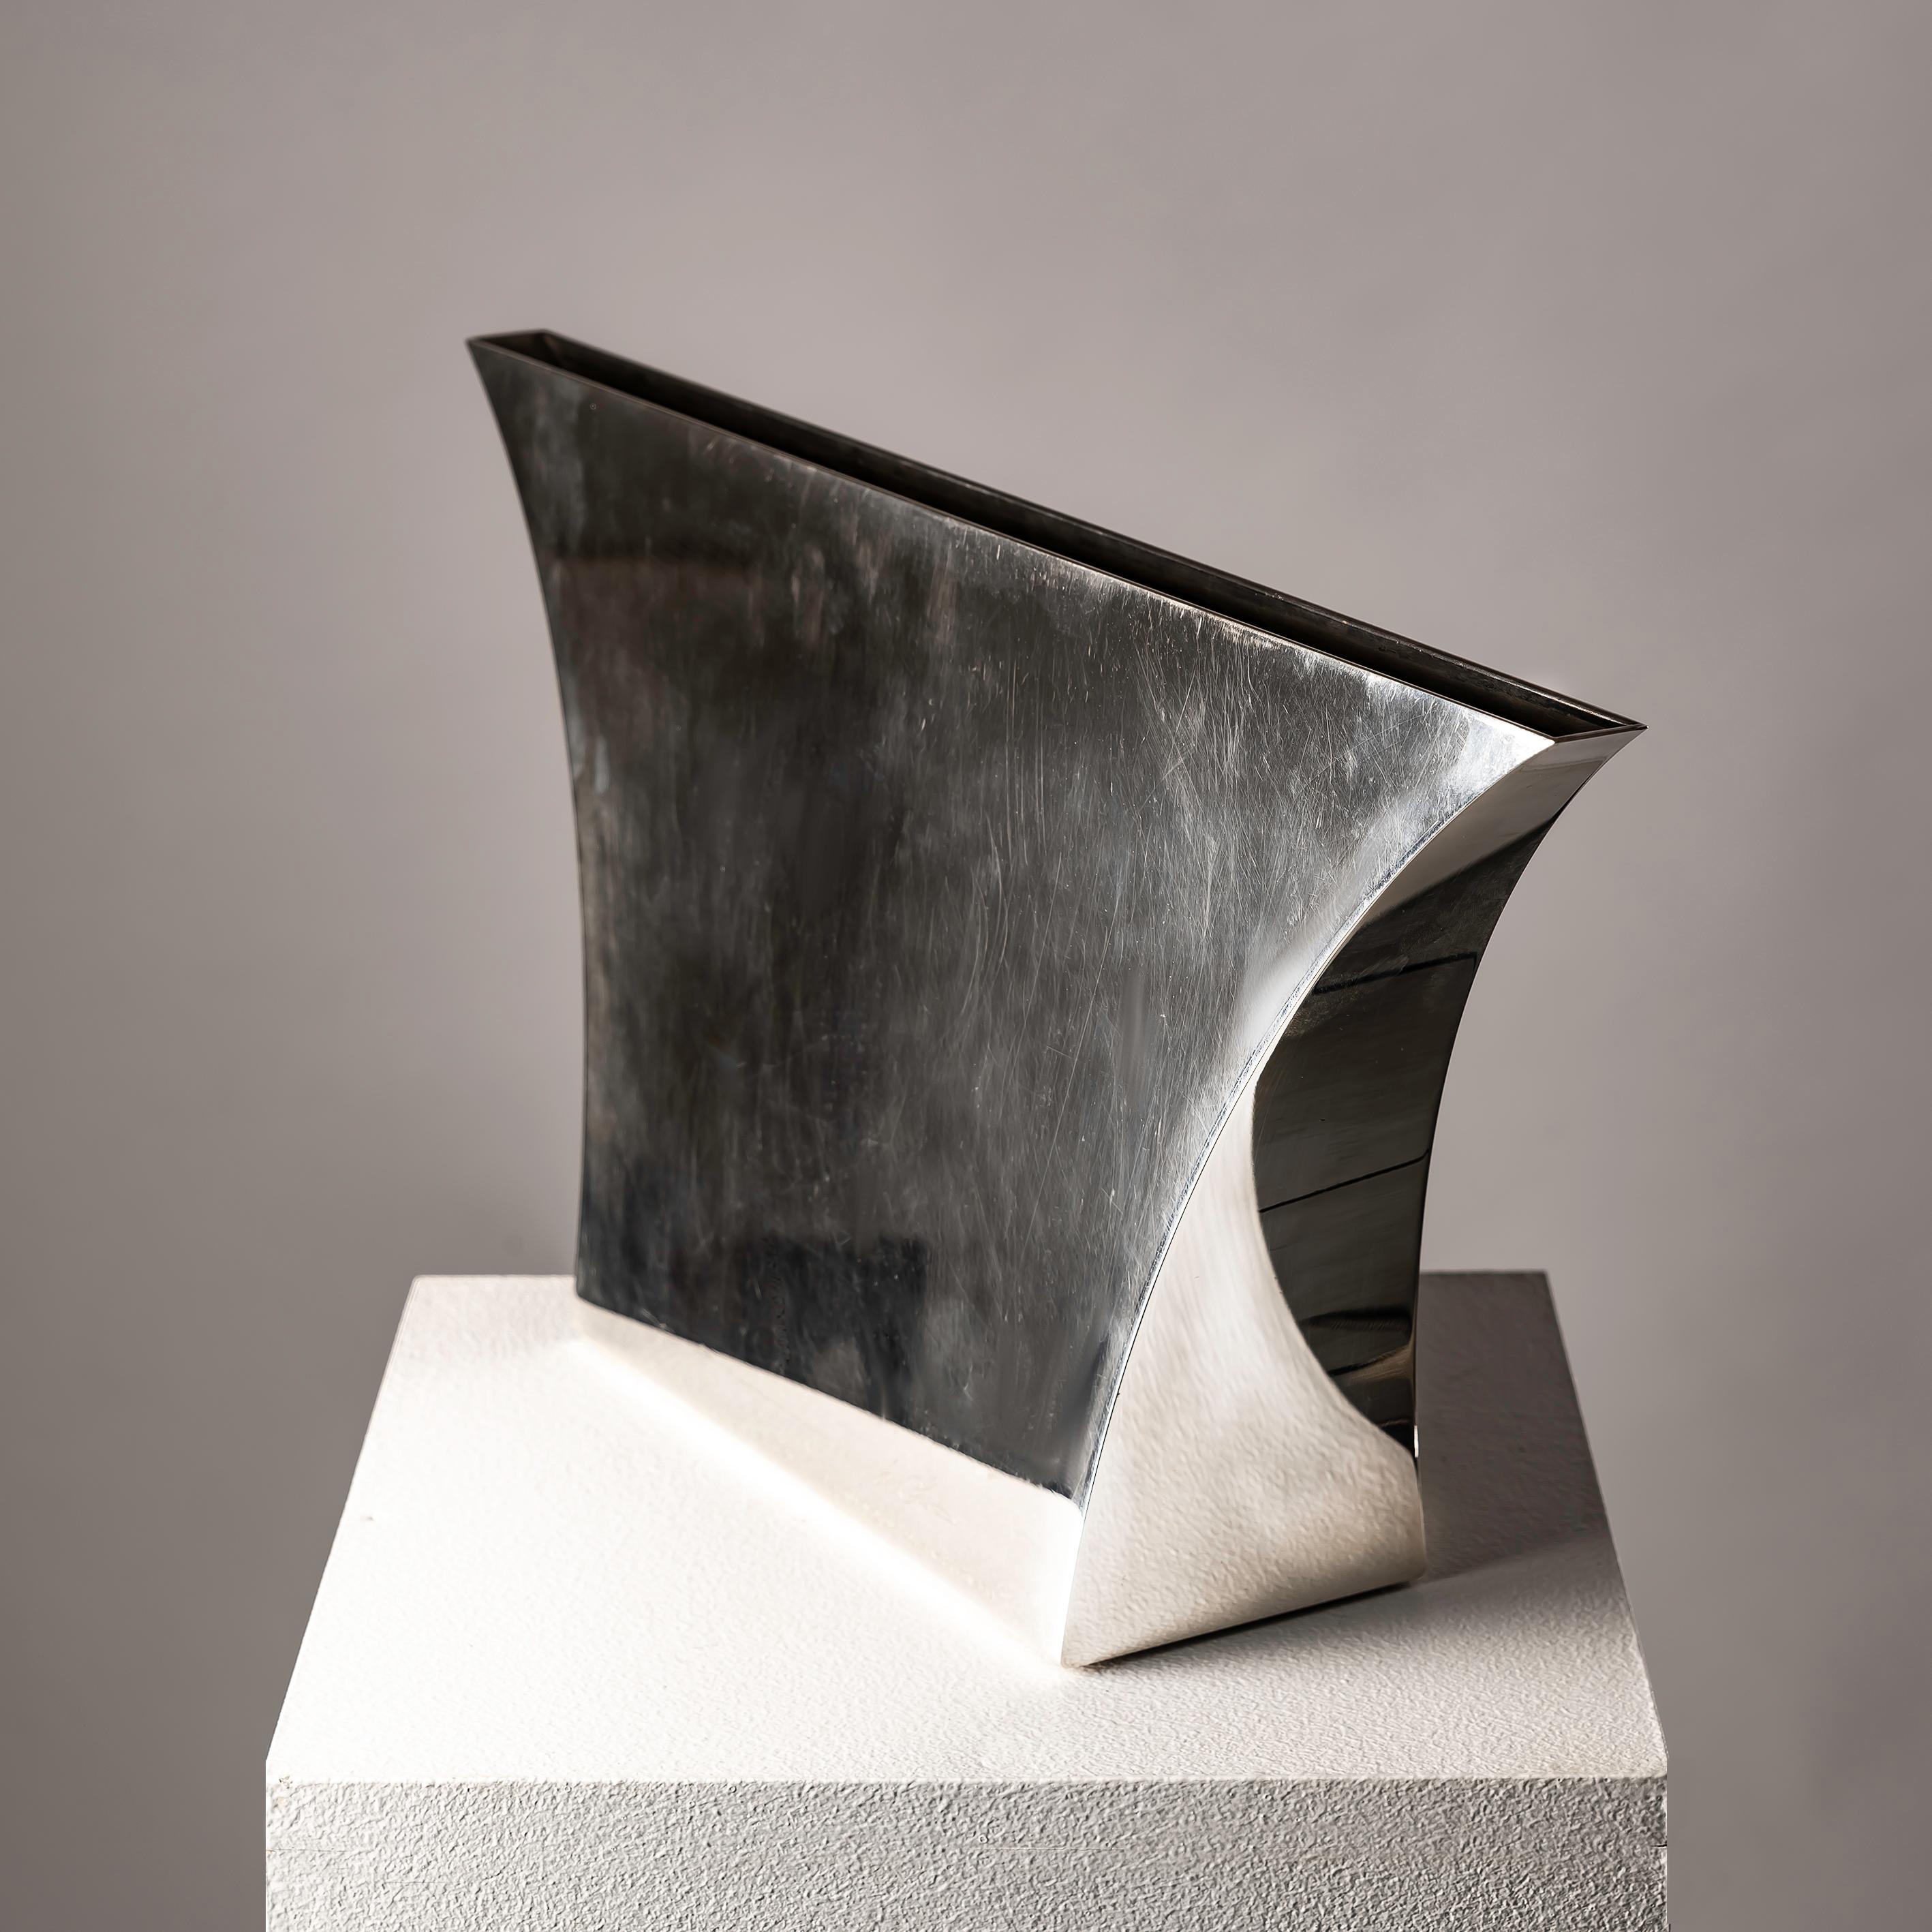 Le vase Persepoli de Lino Sabattini, fabriqué dans les années 1970, est une pièce unique et spéciale qui incarne l'essence de l'excellence du design italien. Sabattini, réputé pour son approche novatrice du travail du métal, a créé ce vase en tenant